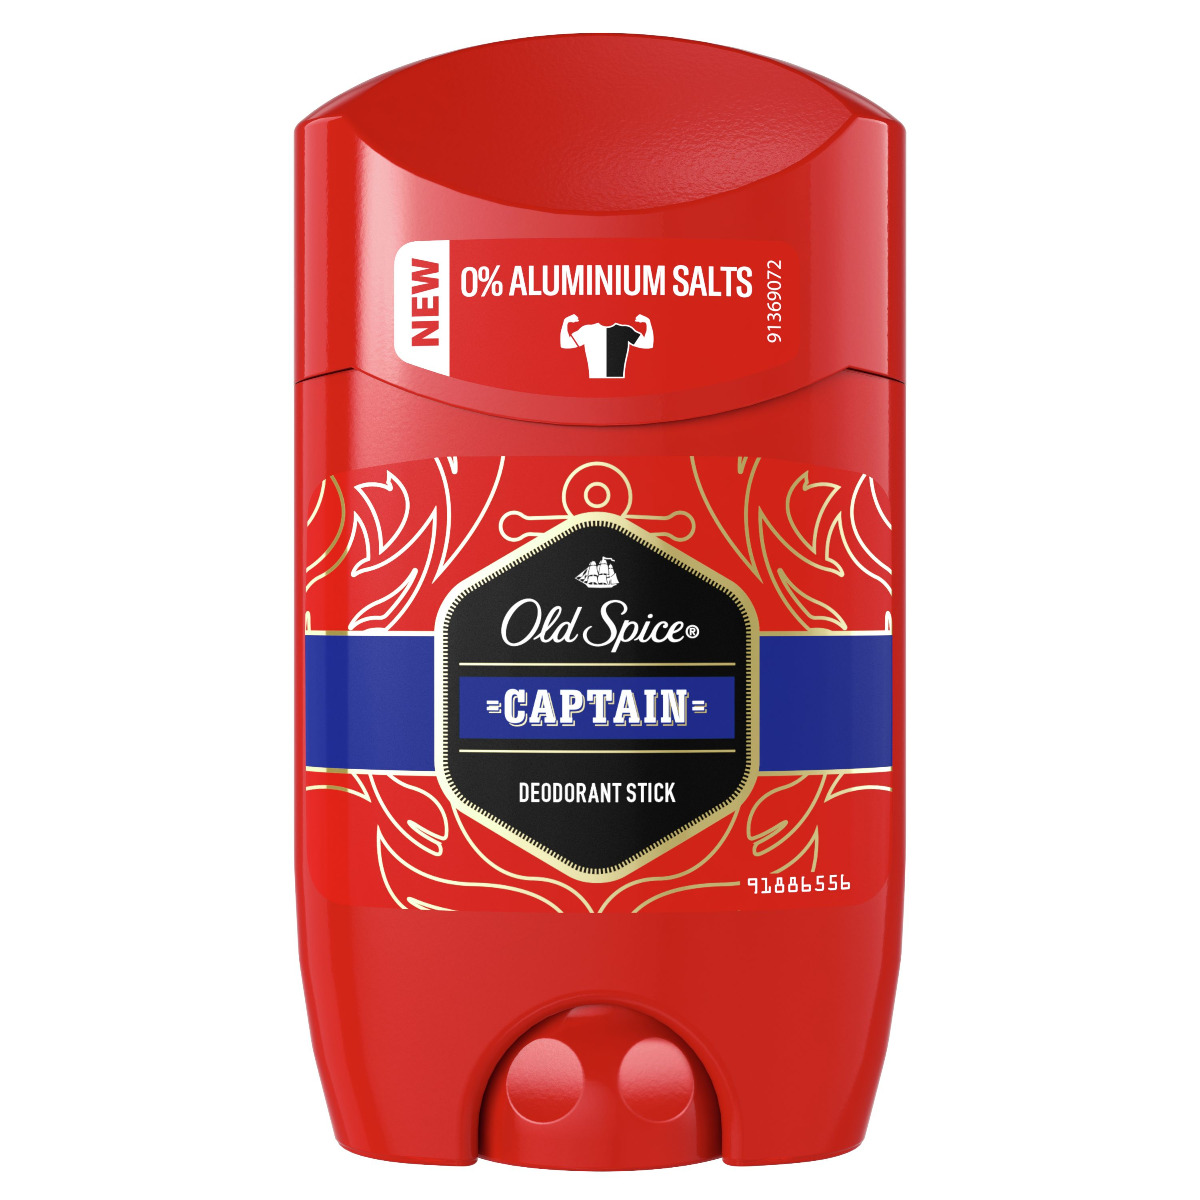 Old Spice Captain Pánský tuhý deodorant 50 ml Old Spice